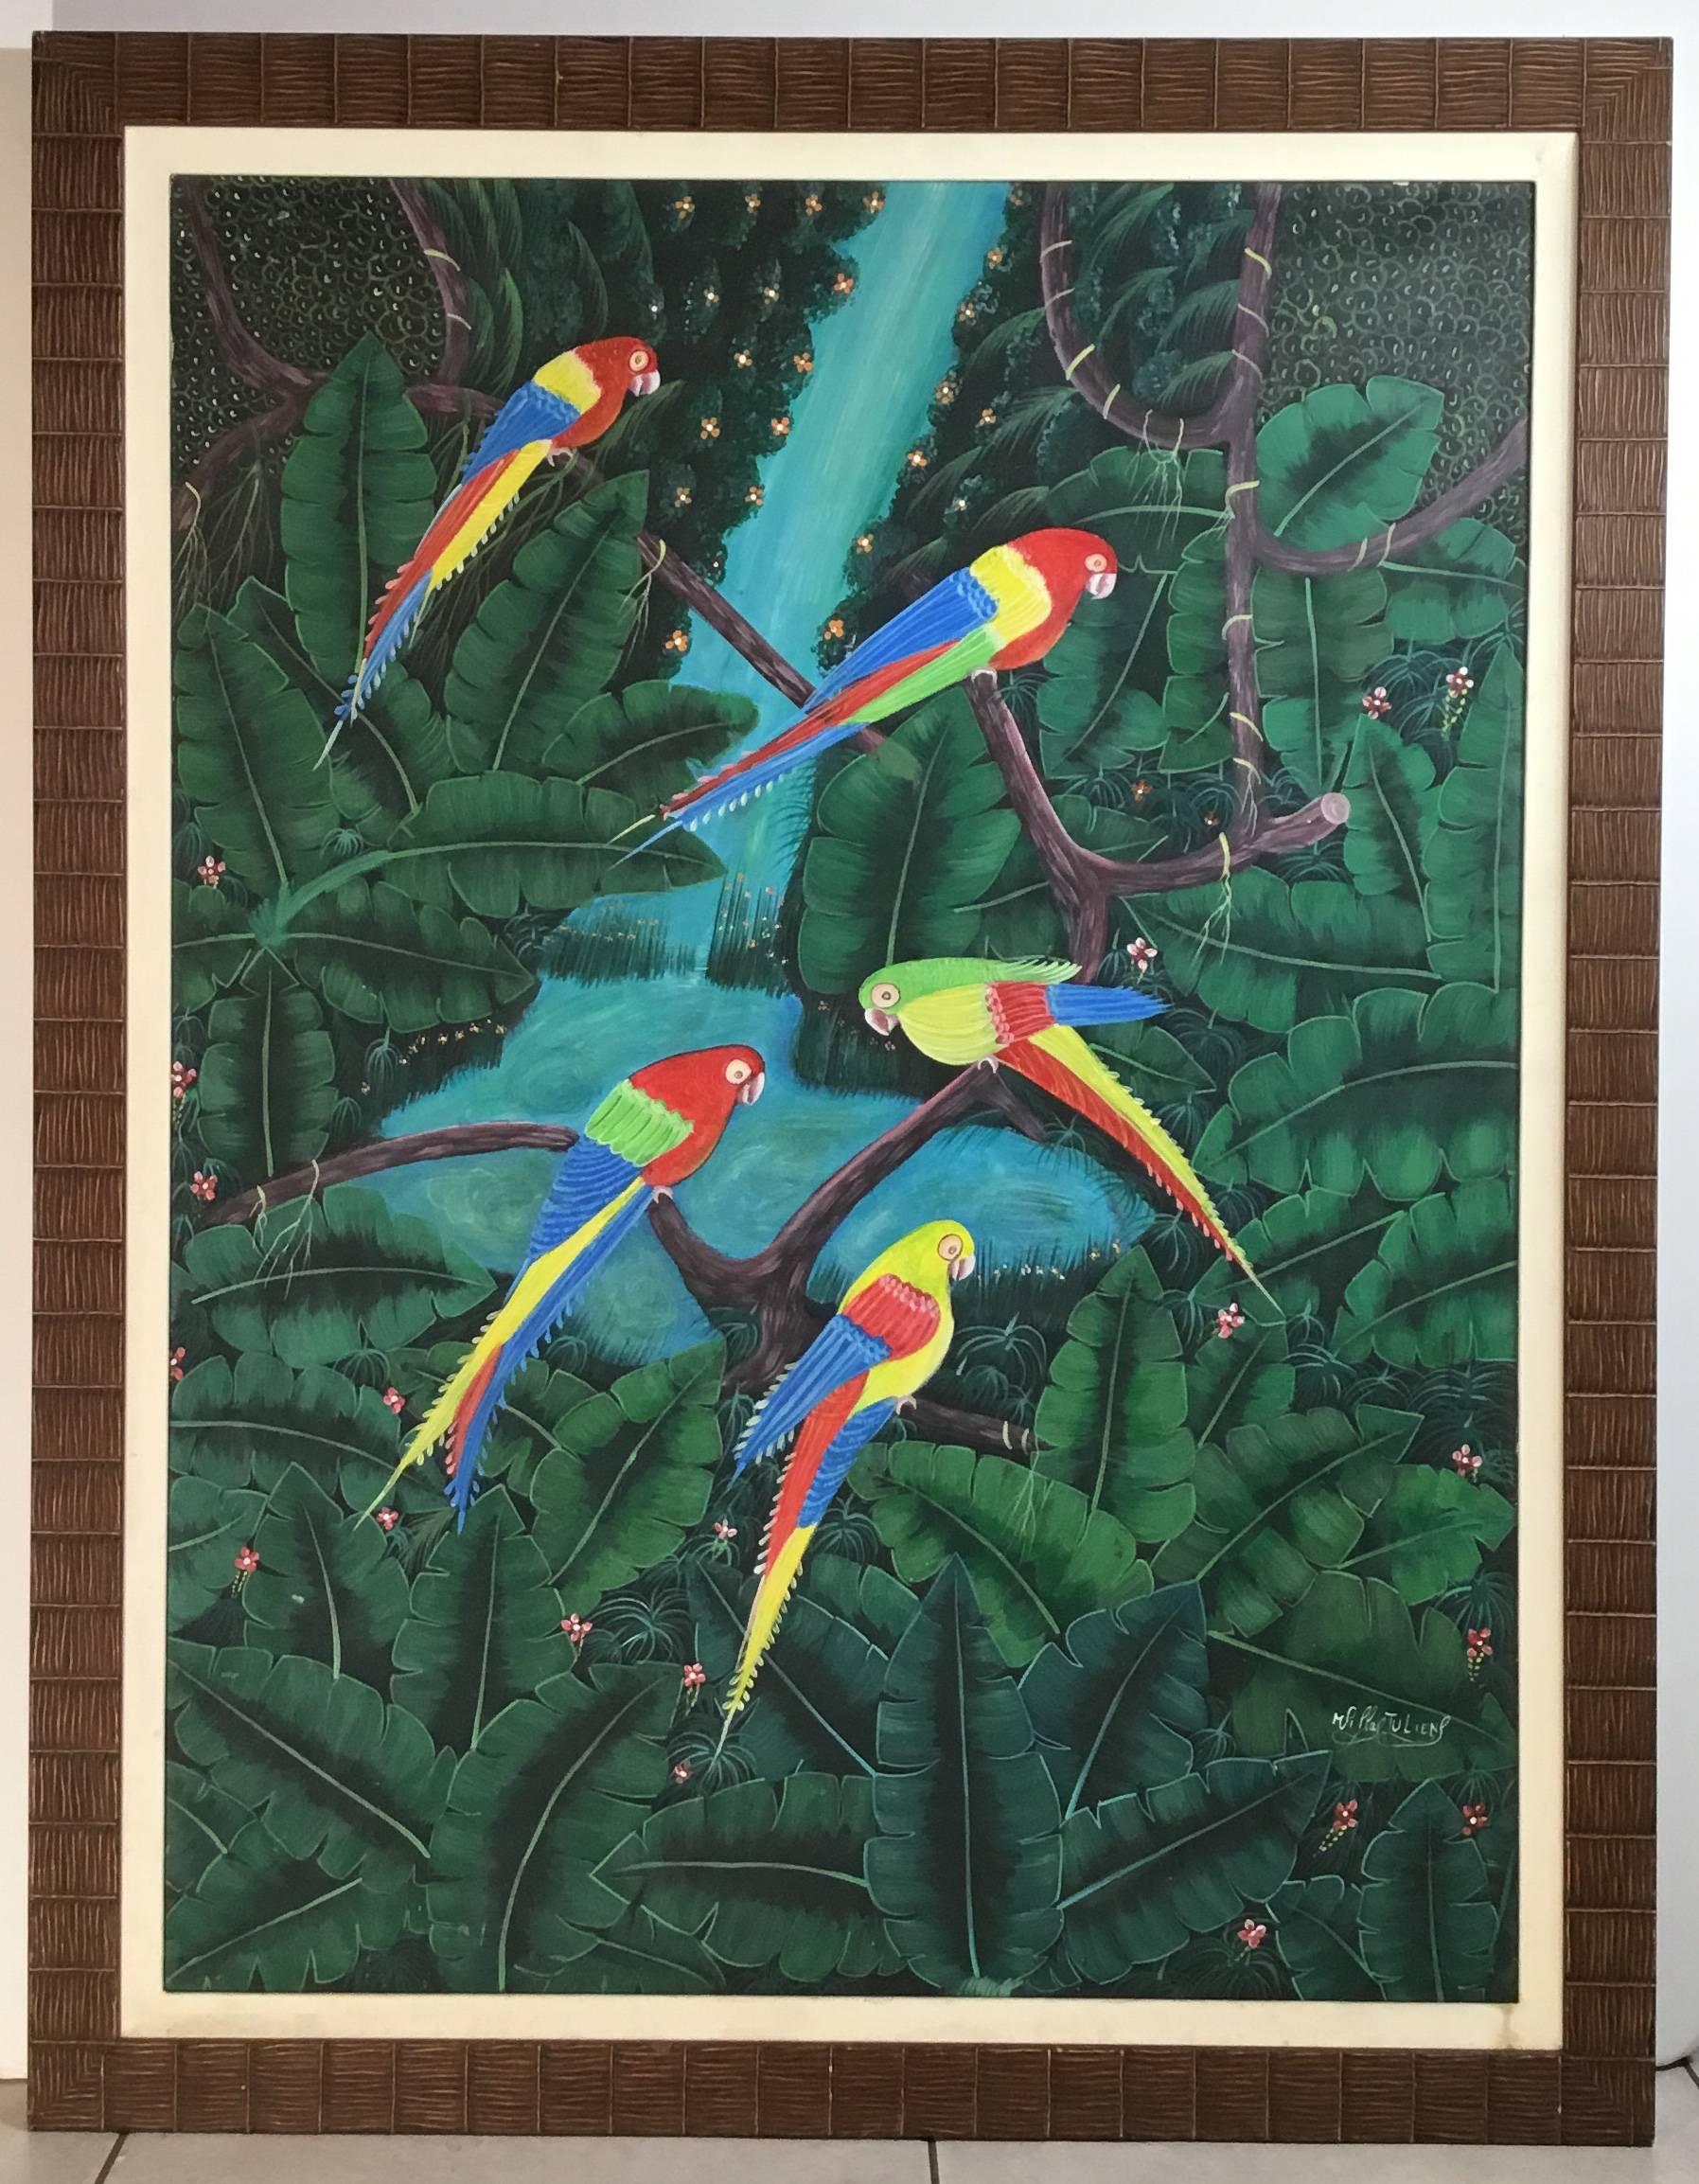 Außergewöhnliche Ölgemälde auf Leinwand von haitianischen Künstler zeigt üppigen grünen Dschungel mit hellen und lebendigen bunten Papageien mit Blick auf schöne grüne und türkise geheimnisvolle Wasserfall.
Das Gemälde hat die originale alte